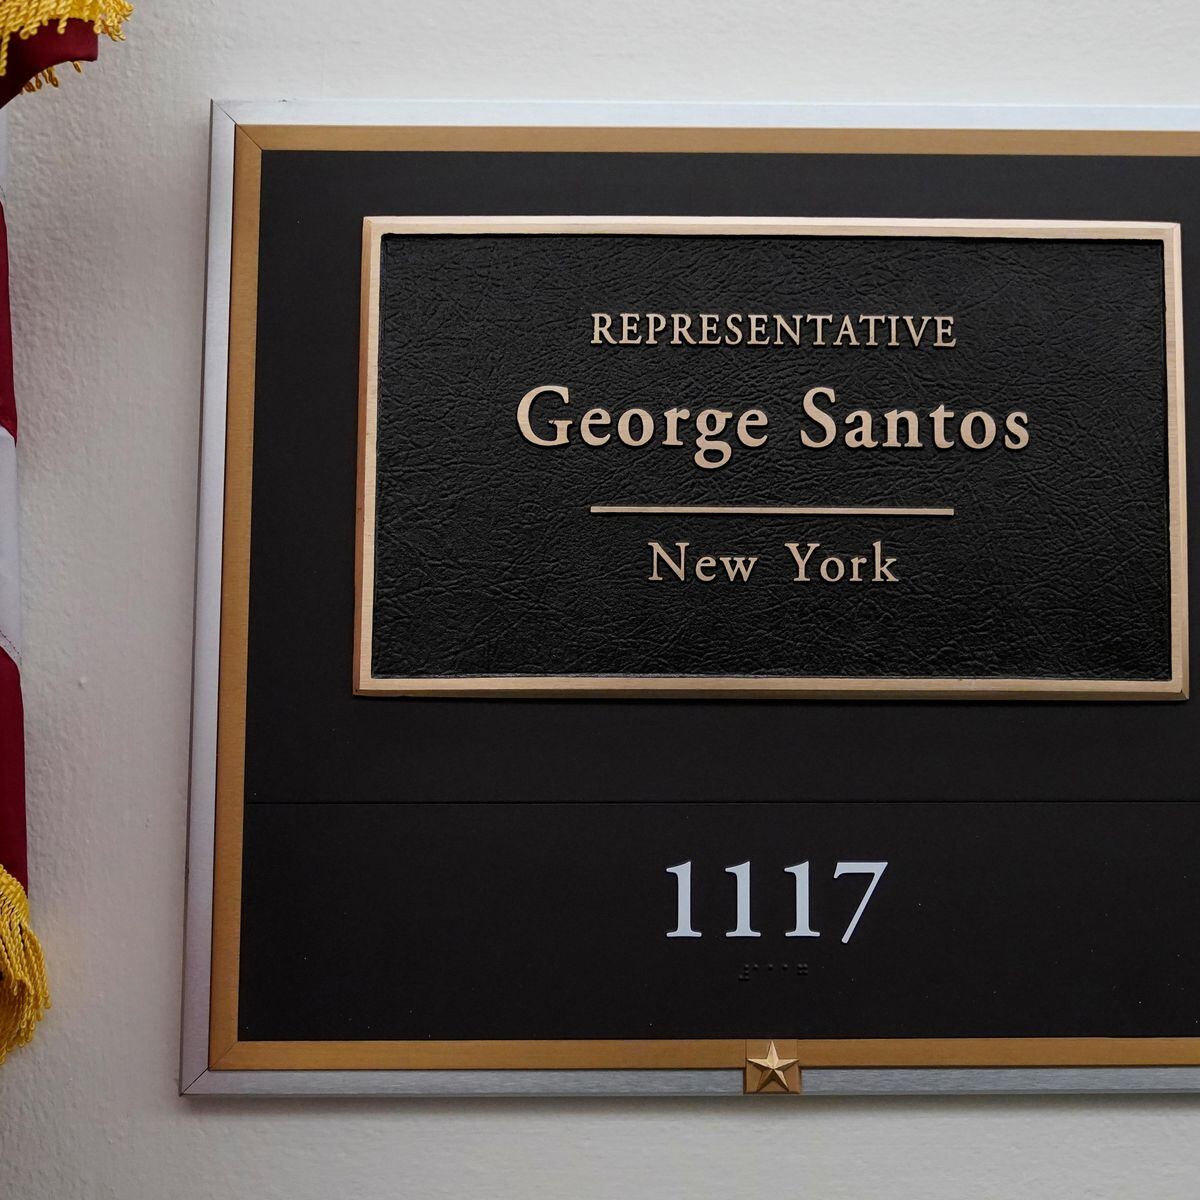 Mentiras de George Santos vieram à tona em estudo de vulnerabilidade feito  por republicanos